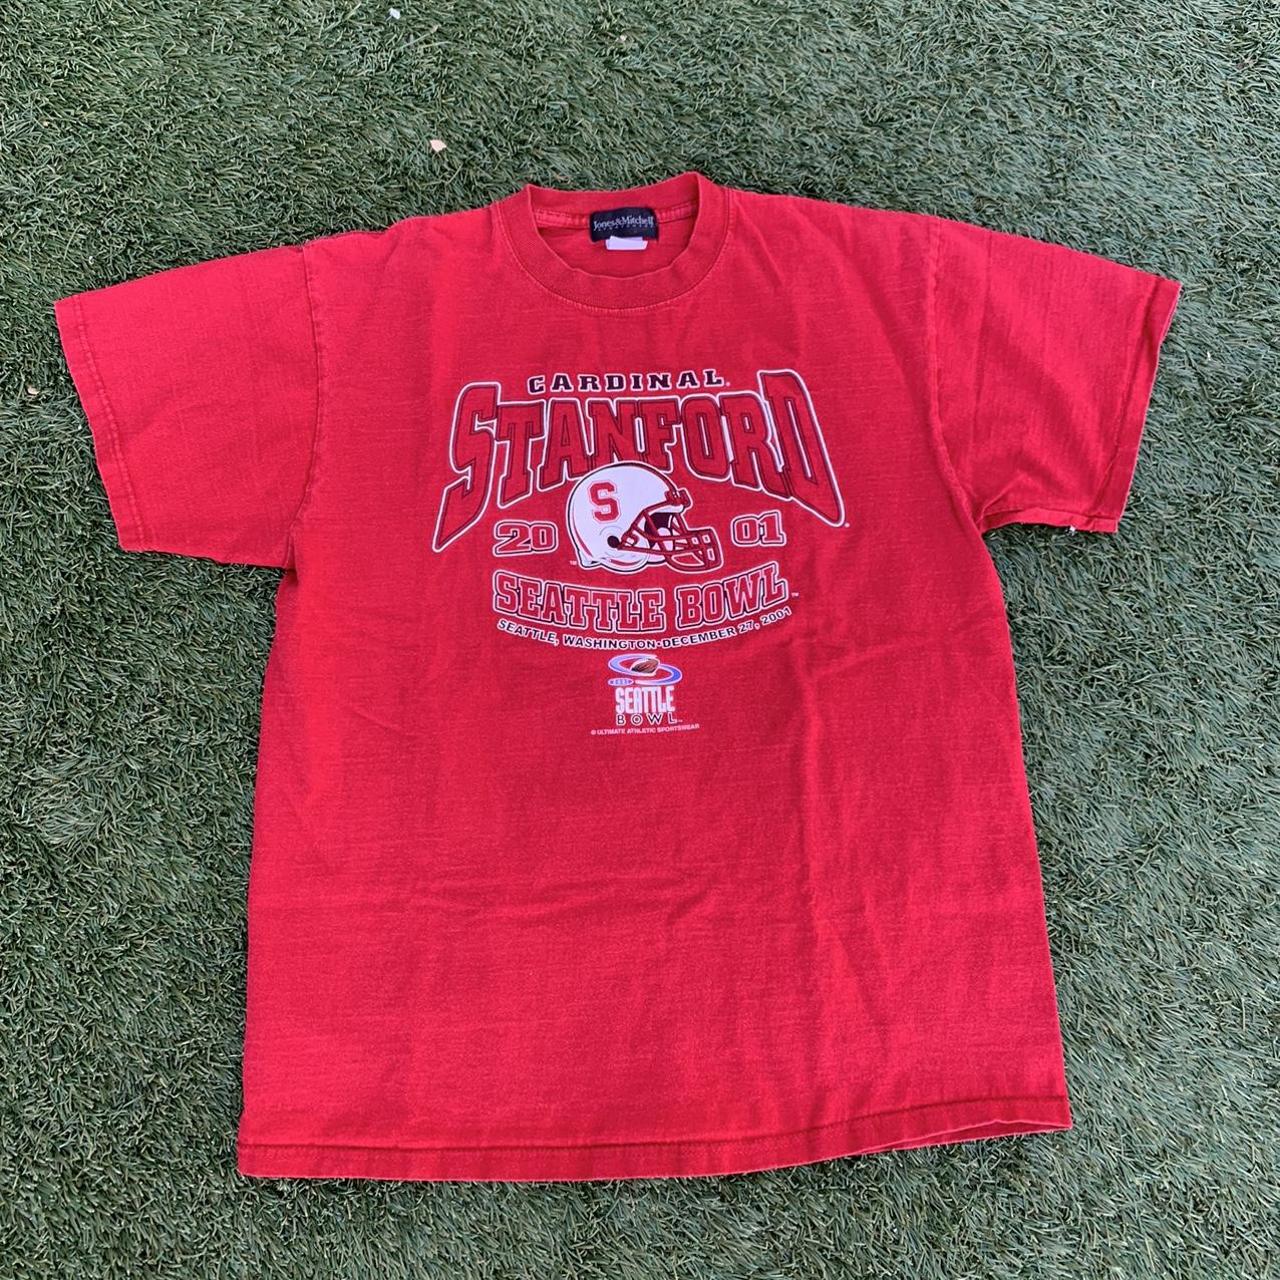 2001 Vintage Y2K Standford T-Shirt -A bit more of a... - Depop